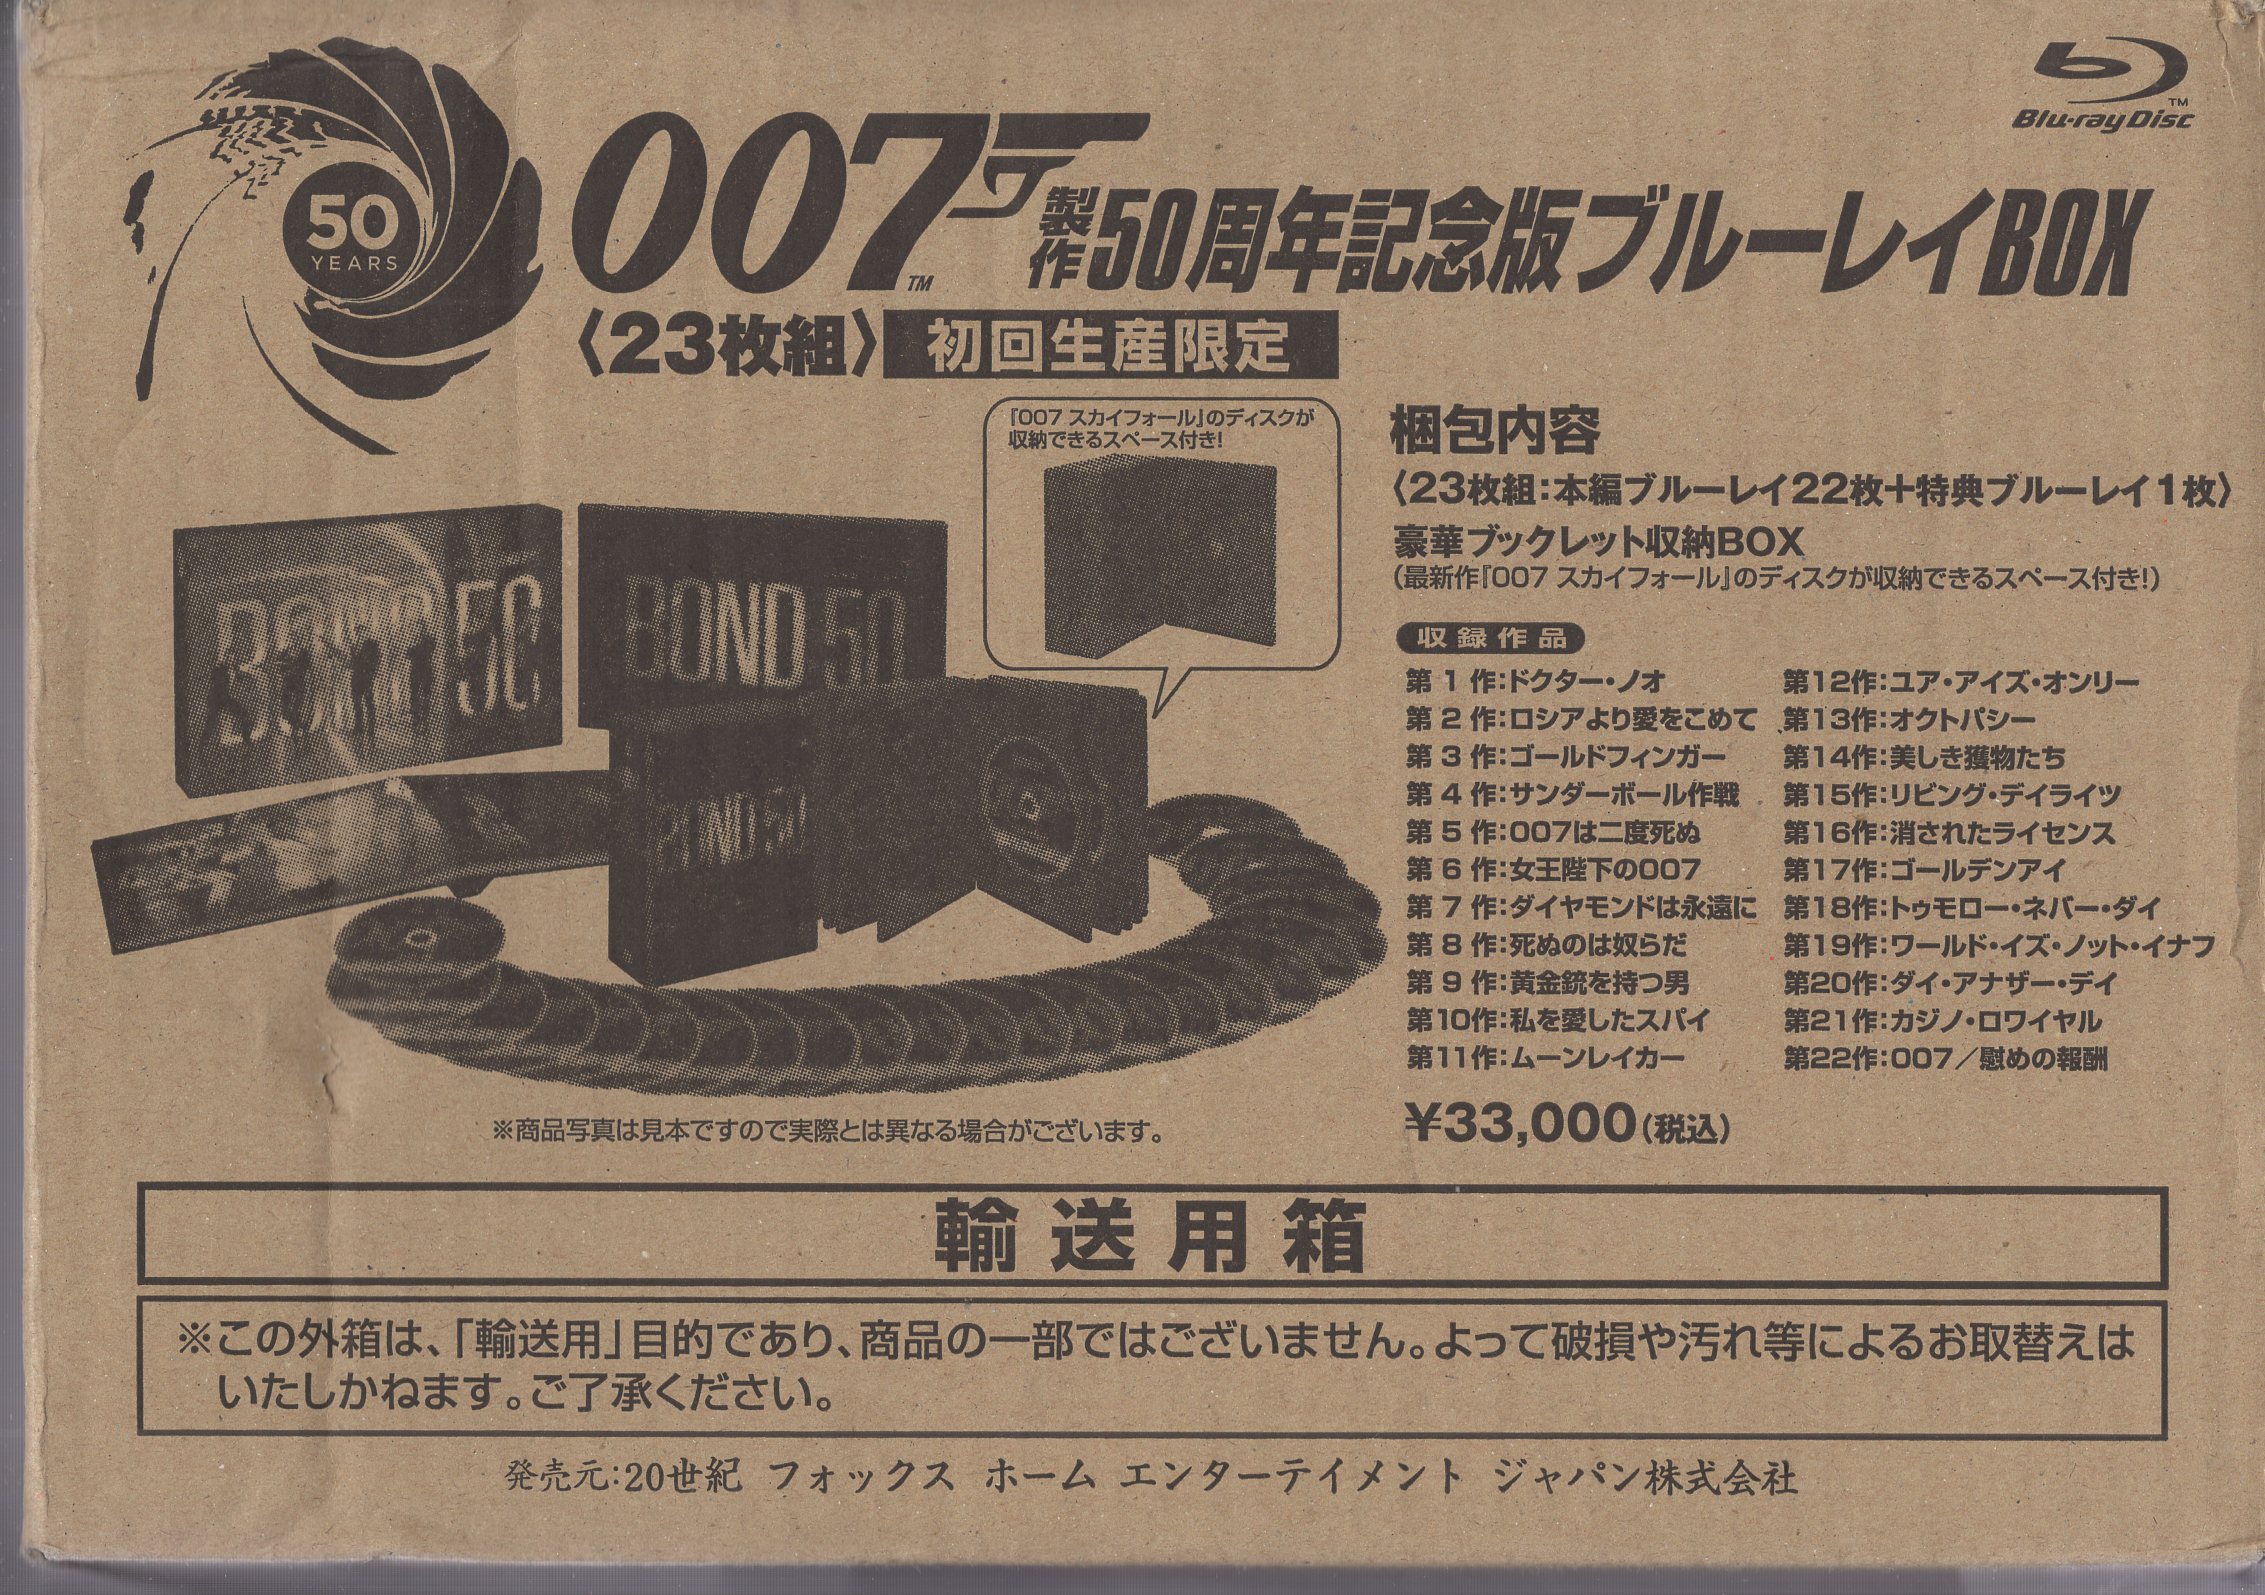 007 製作50周年記念版 ブルーレイBOX〈初回生産限定・23枚組〉 - 外国映画